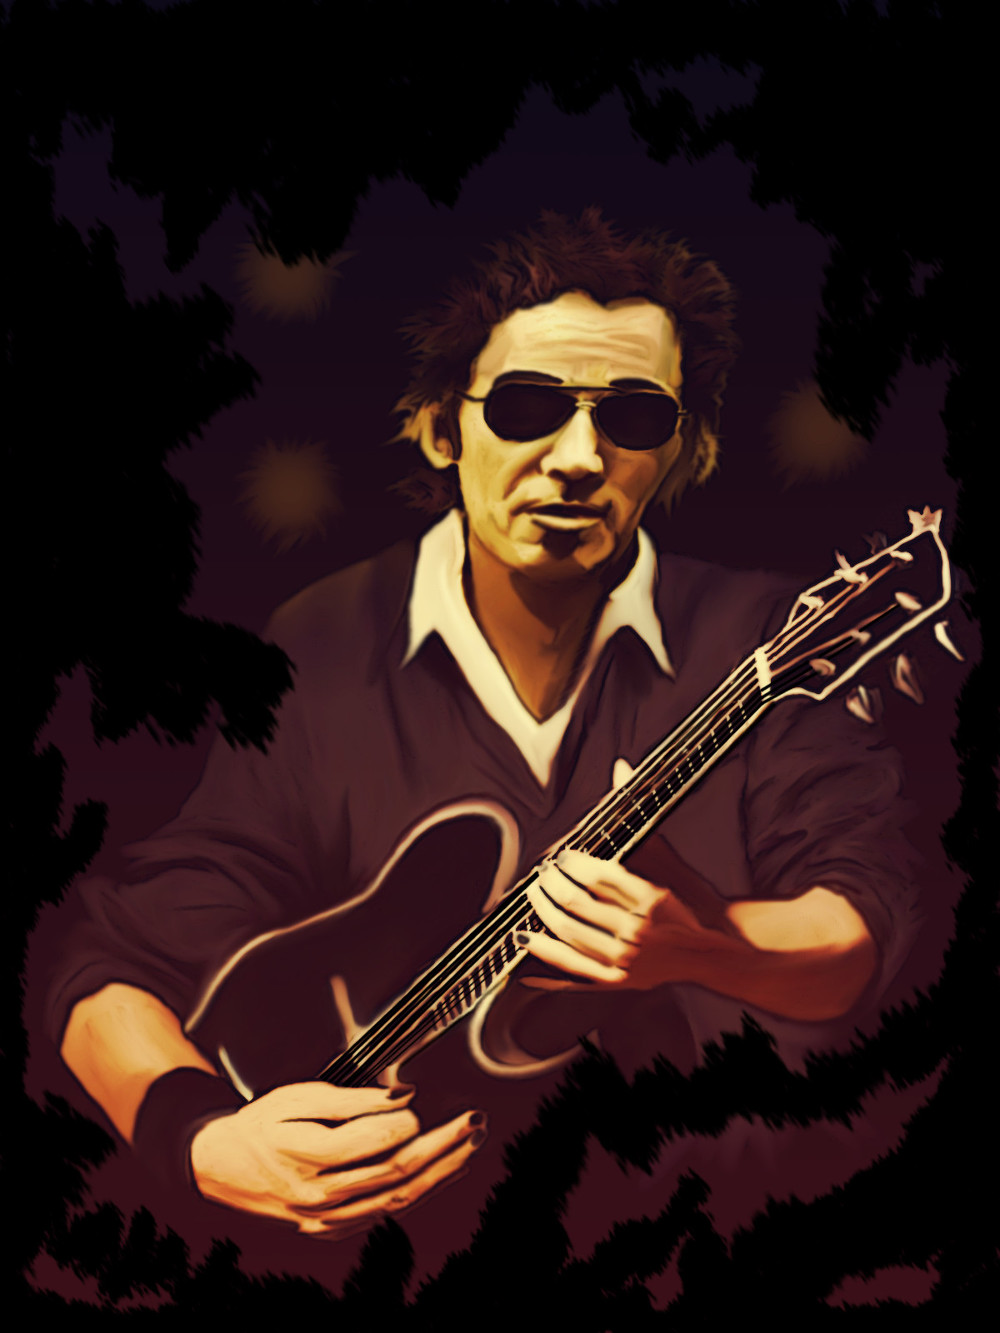 Dibujo de Bruce Springsteen tocando la guitarra. Estilo vintage